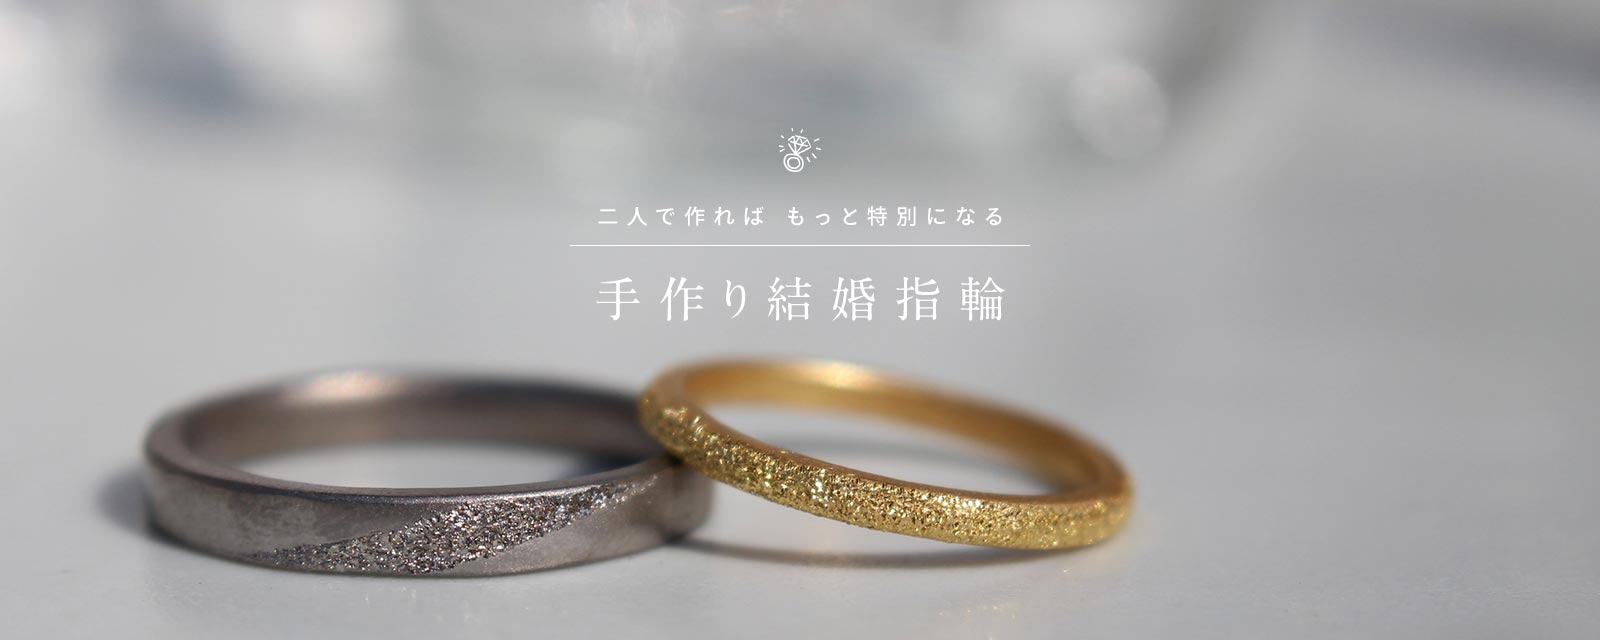 福岡で人気 2人で作る結婚指輪 婚約指輪 手作り指輪のお店m Studio 手作り婚約 結婚指輪